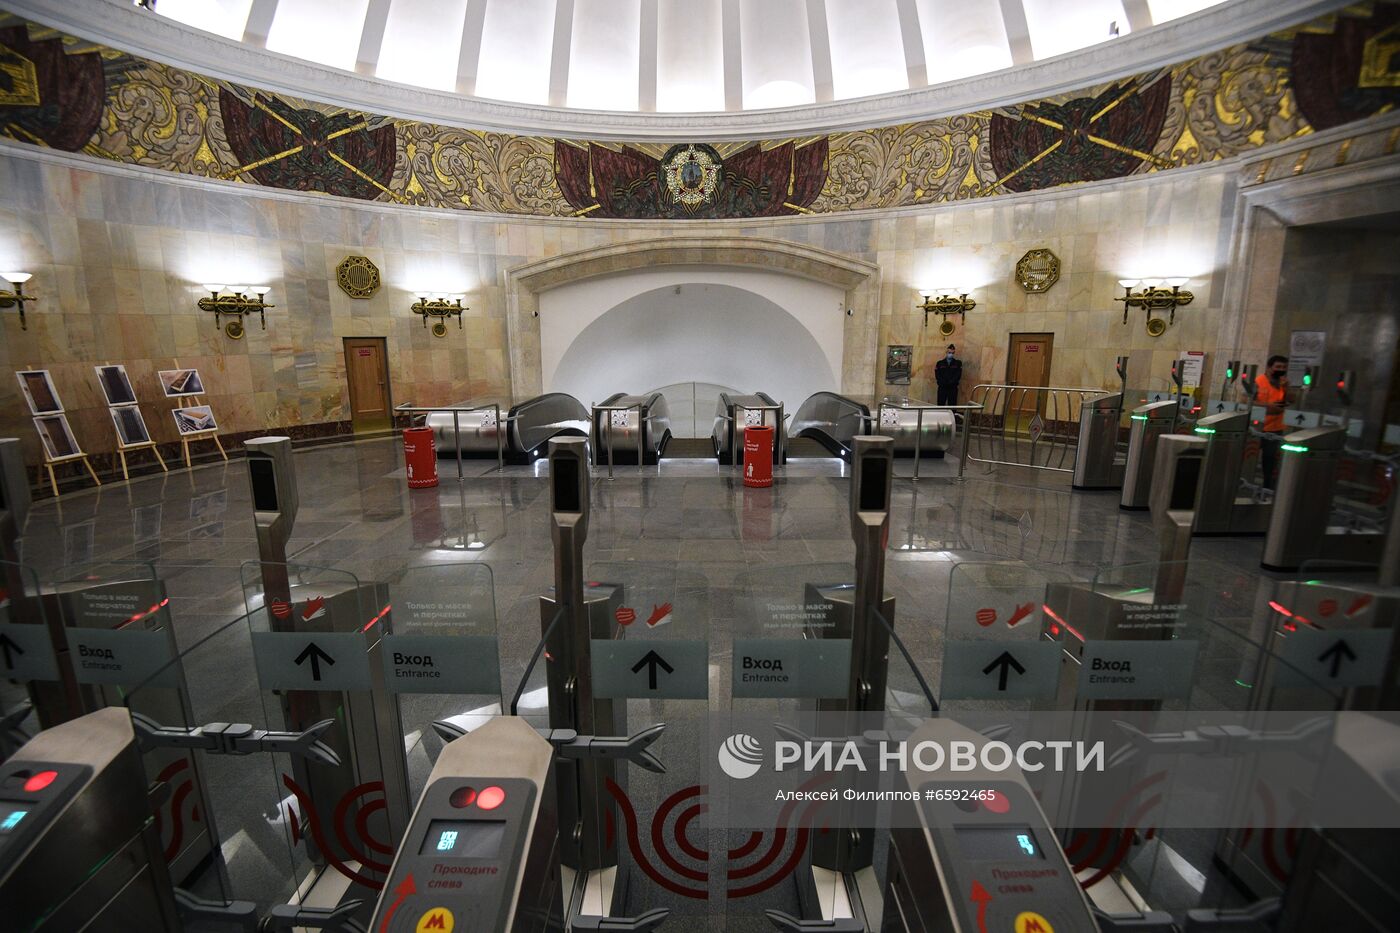 Открытие станции метро "Смоленская" Арбатско-Покровской линии после реконструкции